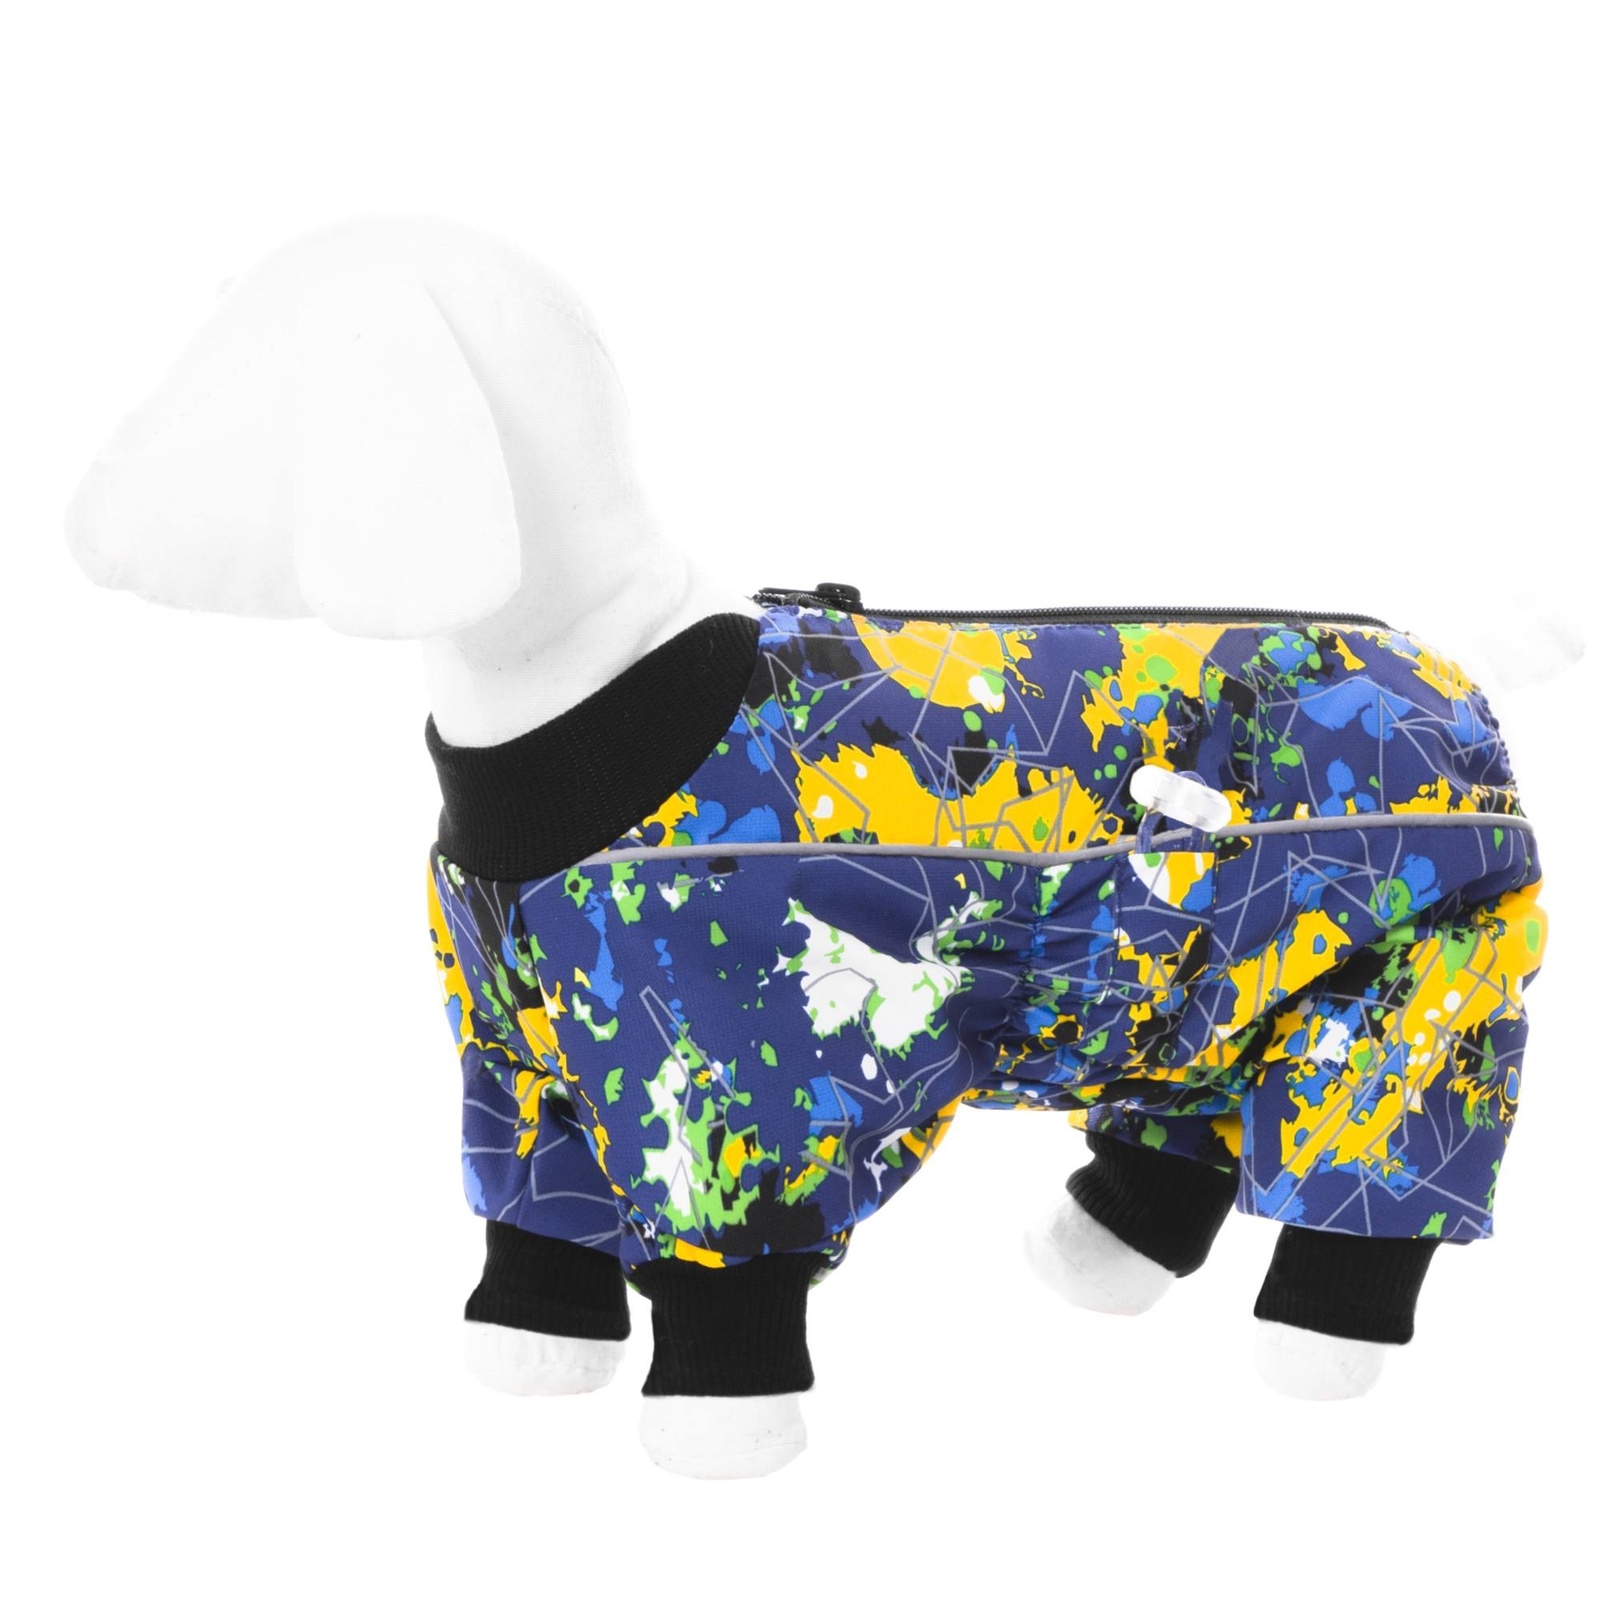 Yami-Yami одежда Yami-Yami одежда комбинезон для собак малых пород, на флисе с рисунком краски (XL) yami yami одежда yami yami одежда комбинезон для собак малых пород на флисе с рисунком краски m